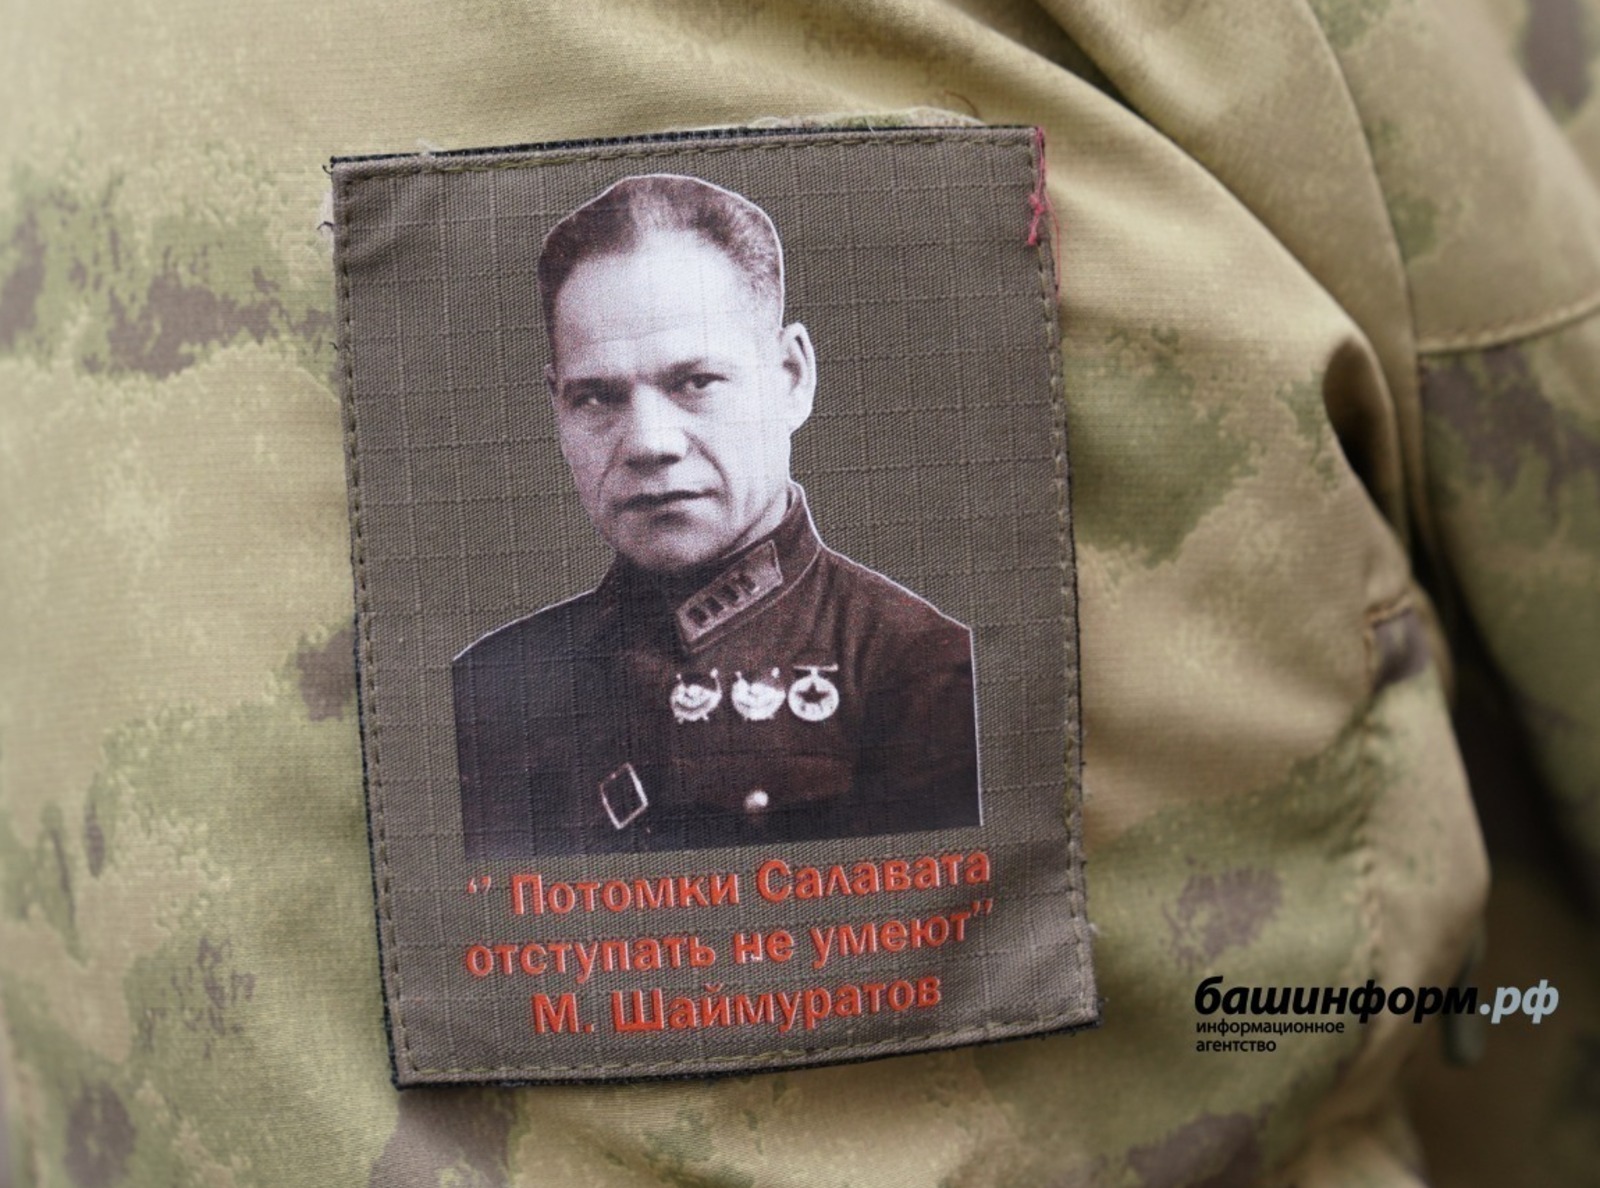 Эксперт Башкирии считает, что песня «Шаймуратов-генерал» стала эмблемой башкирских воинов